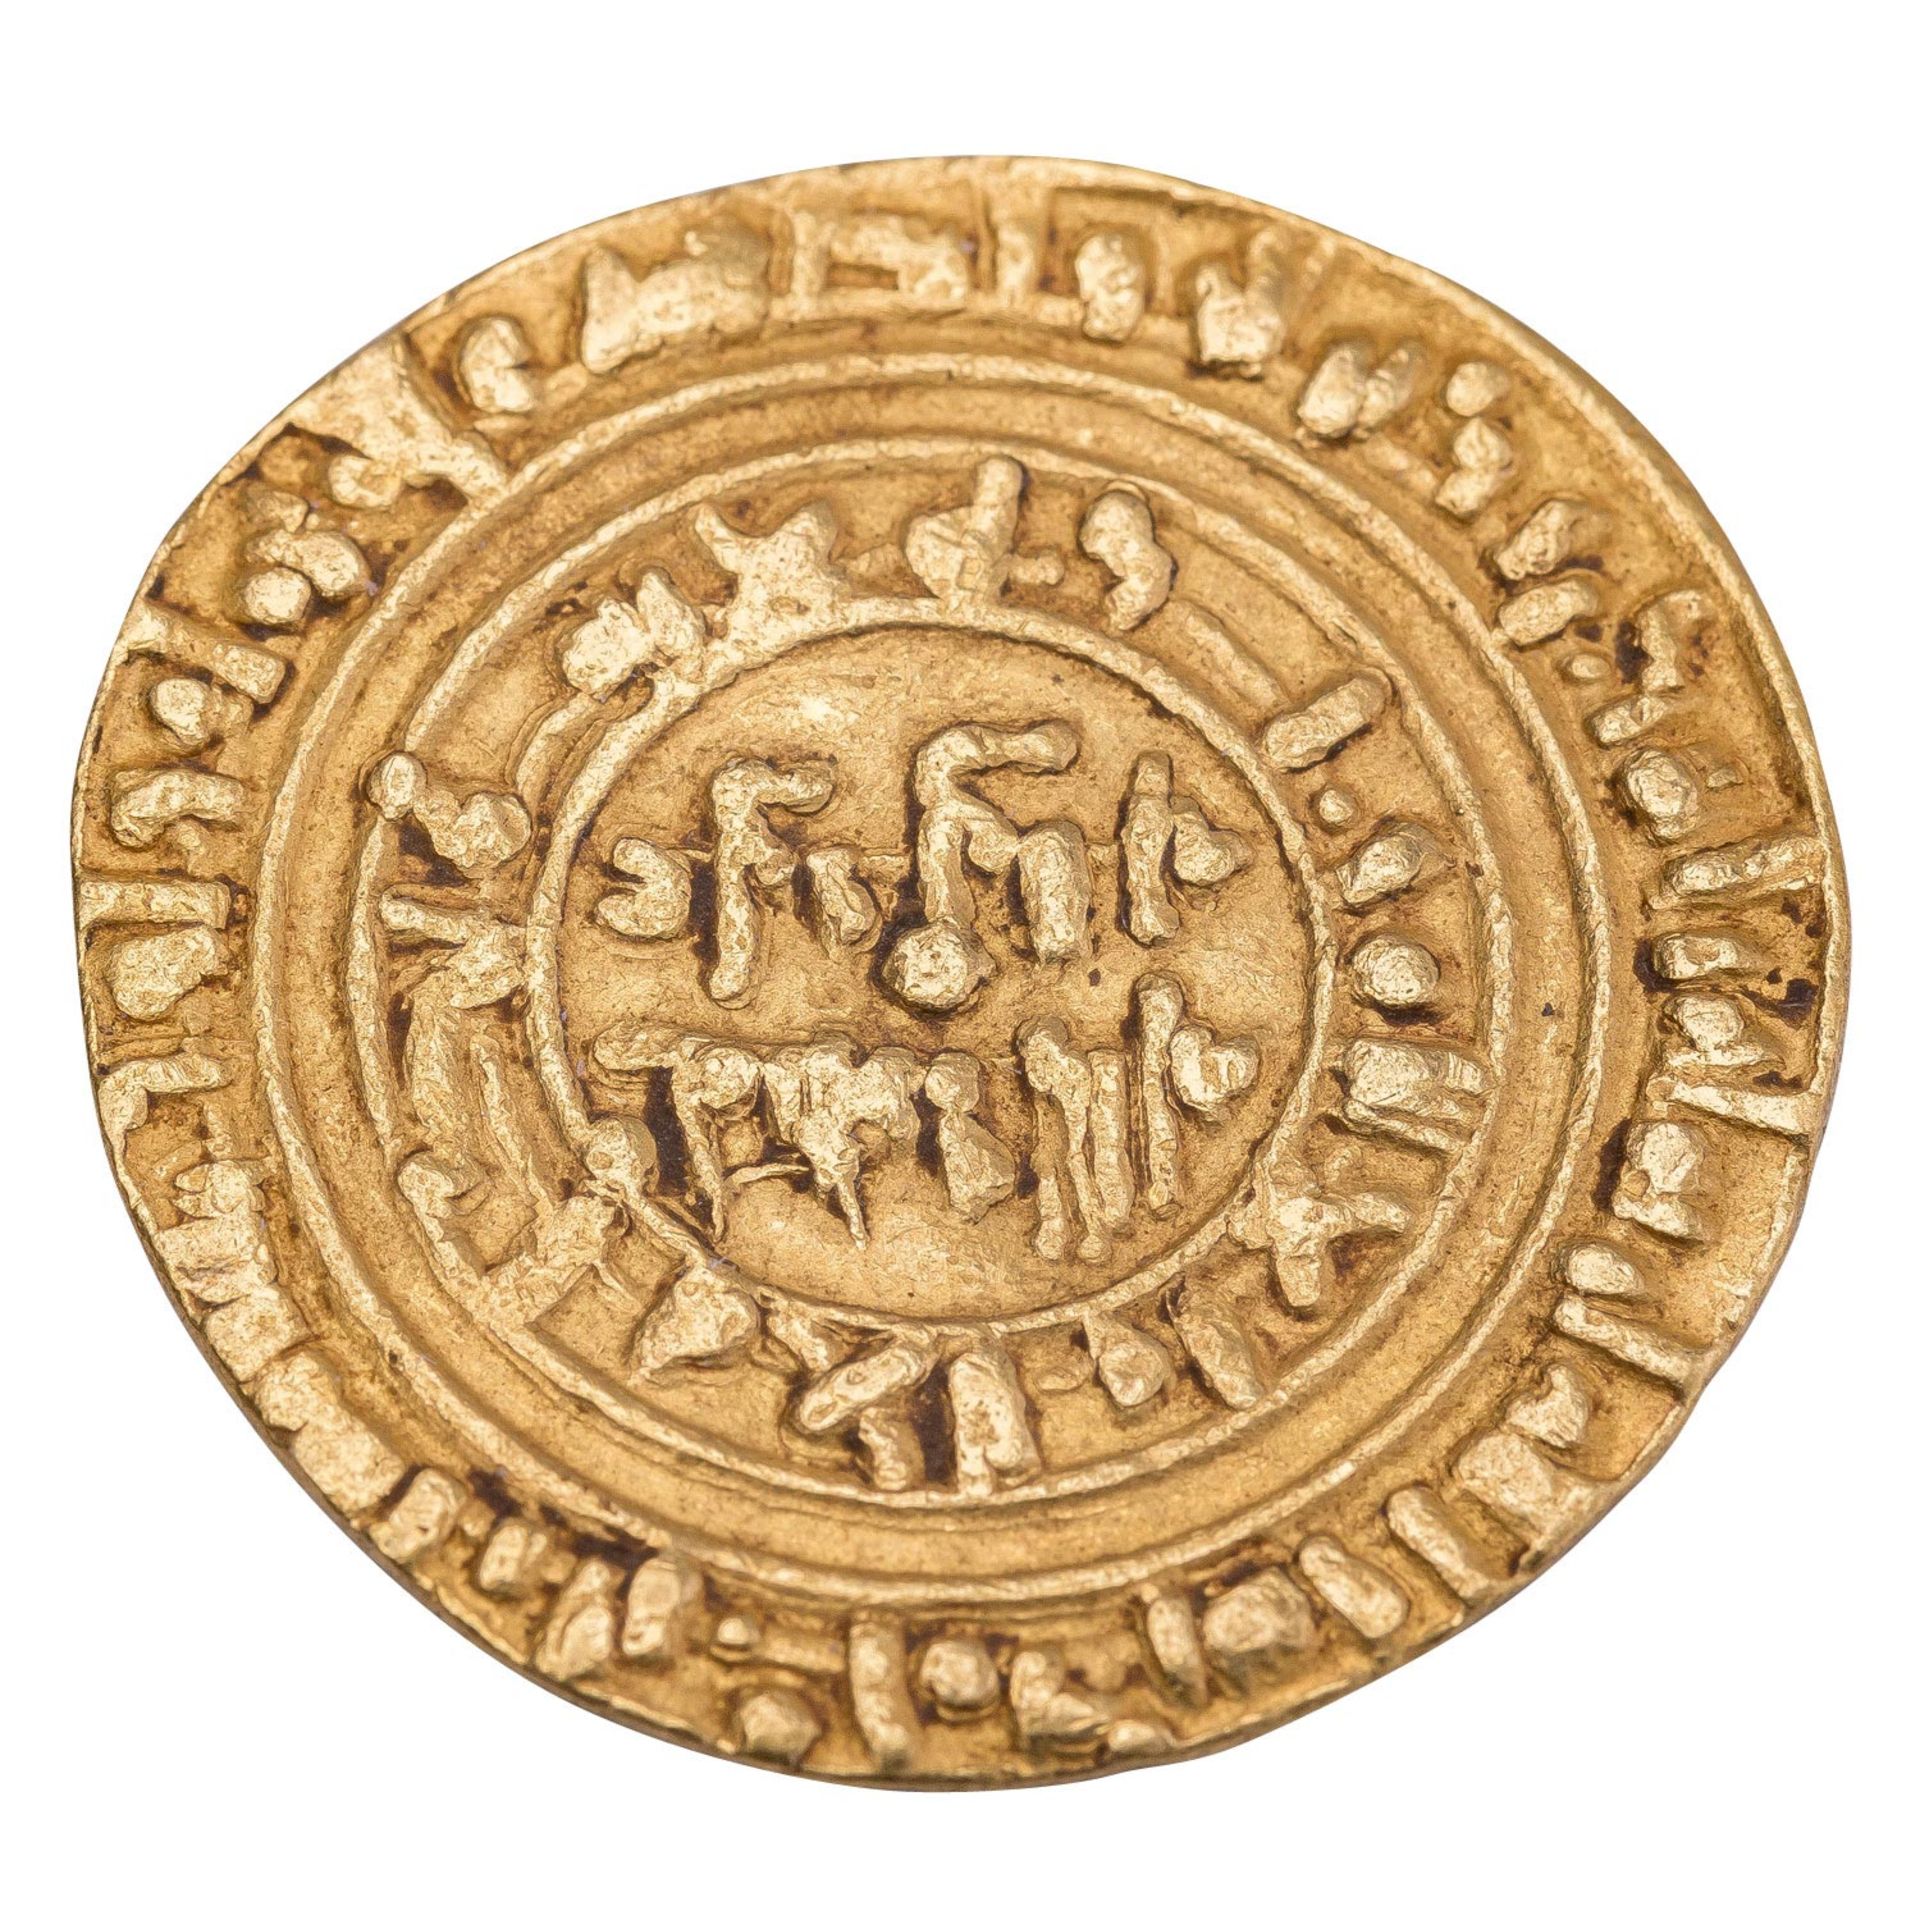 Orientalische Münzen, Fatamiden in Ägypten - Gold Dinar, Al-Hakim, 996- 1021 n. Chr.,